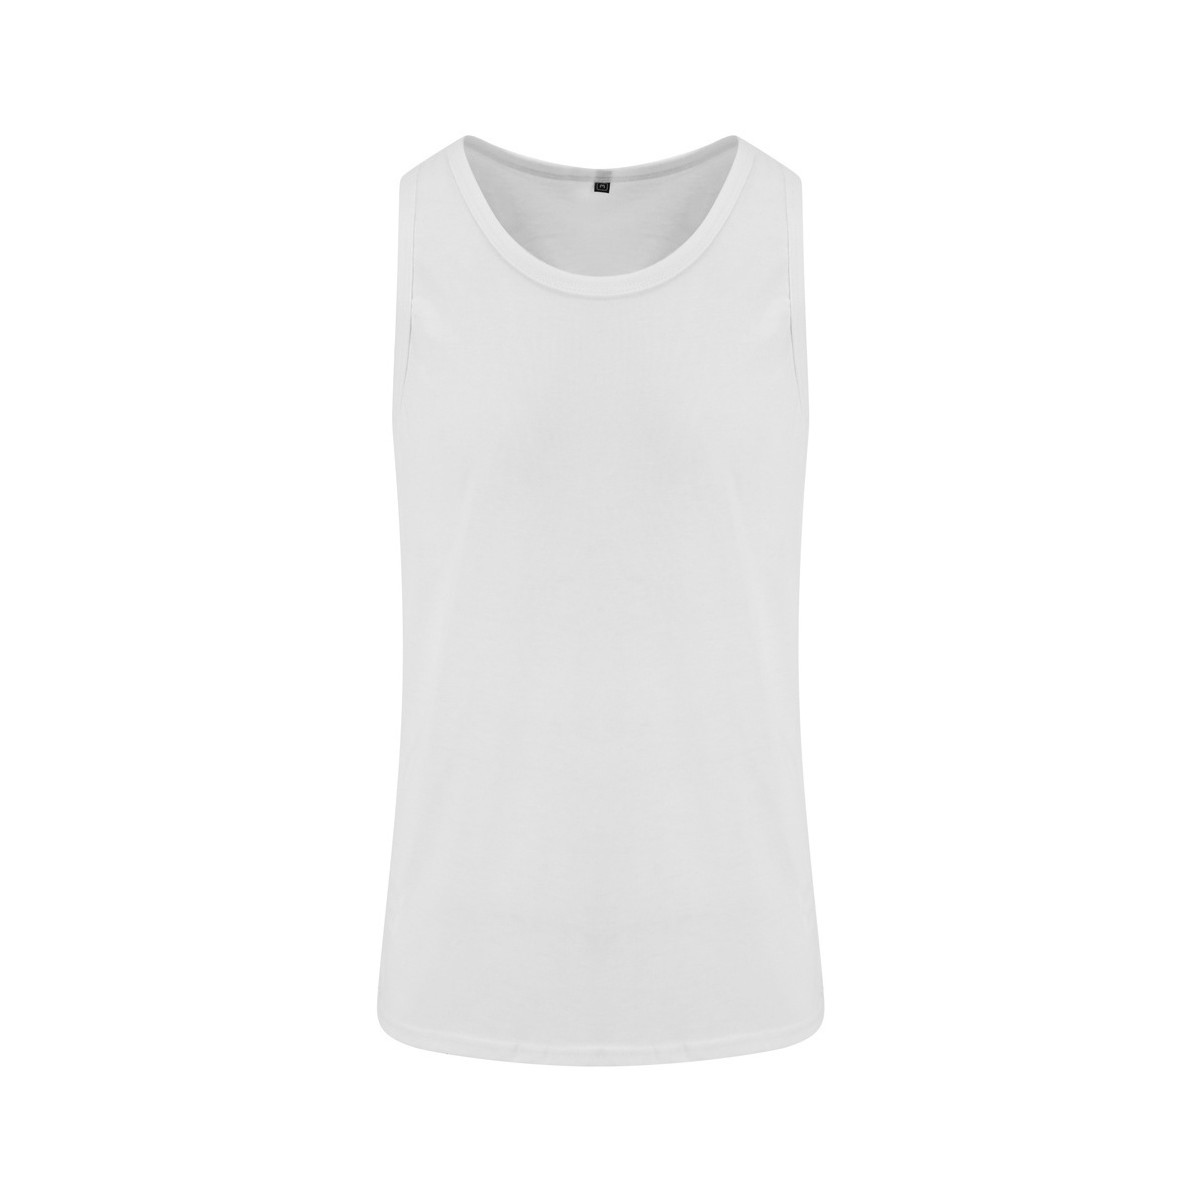 Abbigliamento Uomo Top / T-shirt senza maniche Awdis Just Ts Bianco